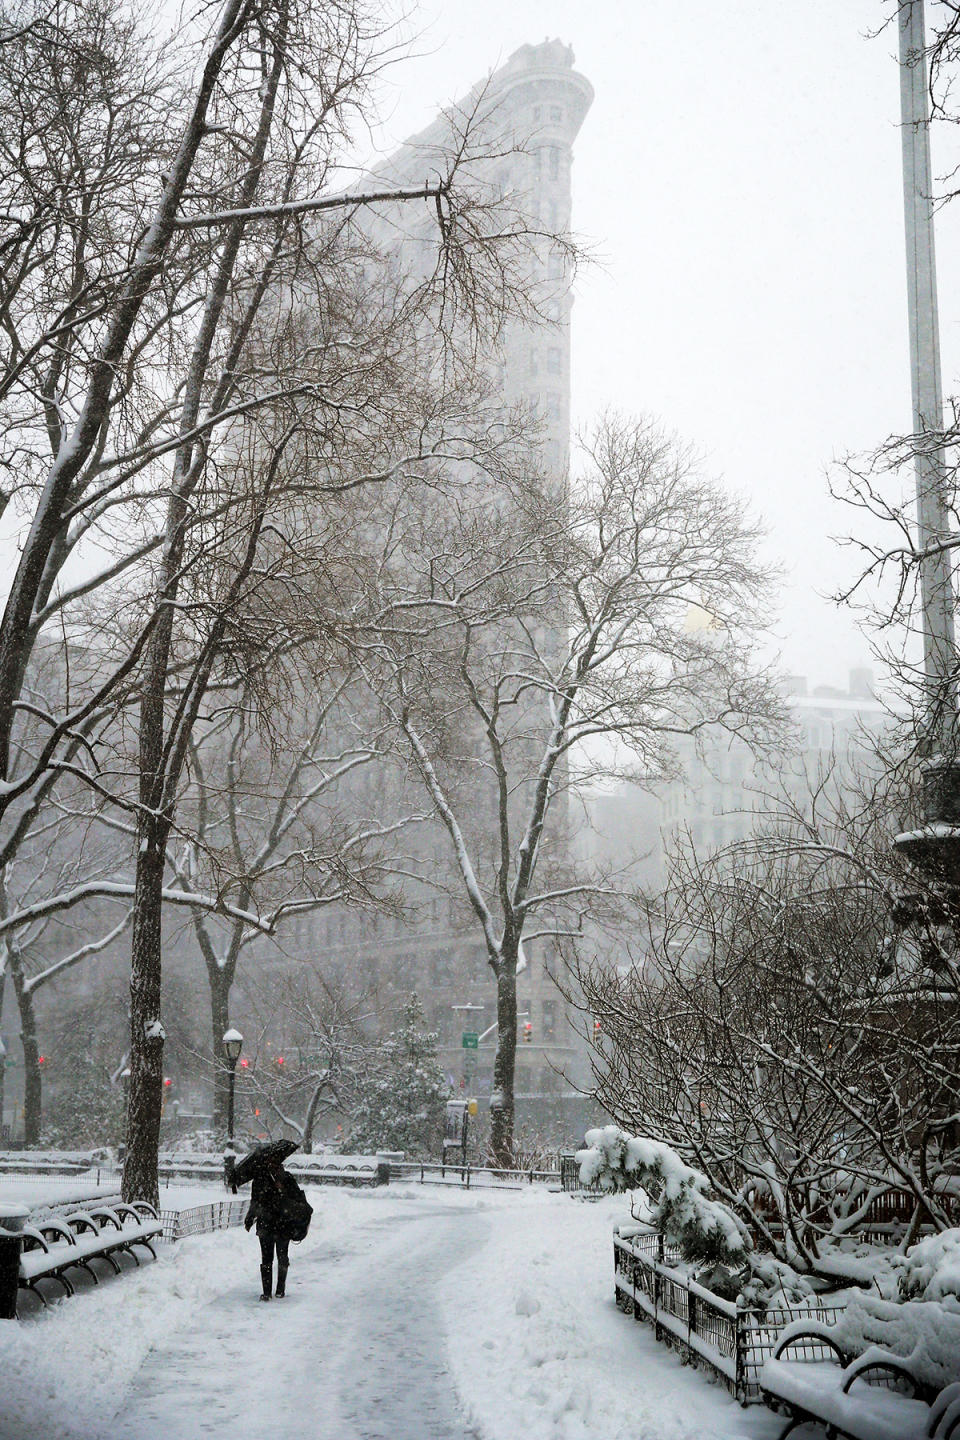 Winter snow storm smacks Northeast U.S.